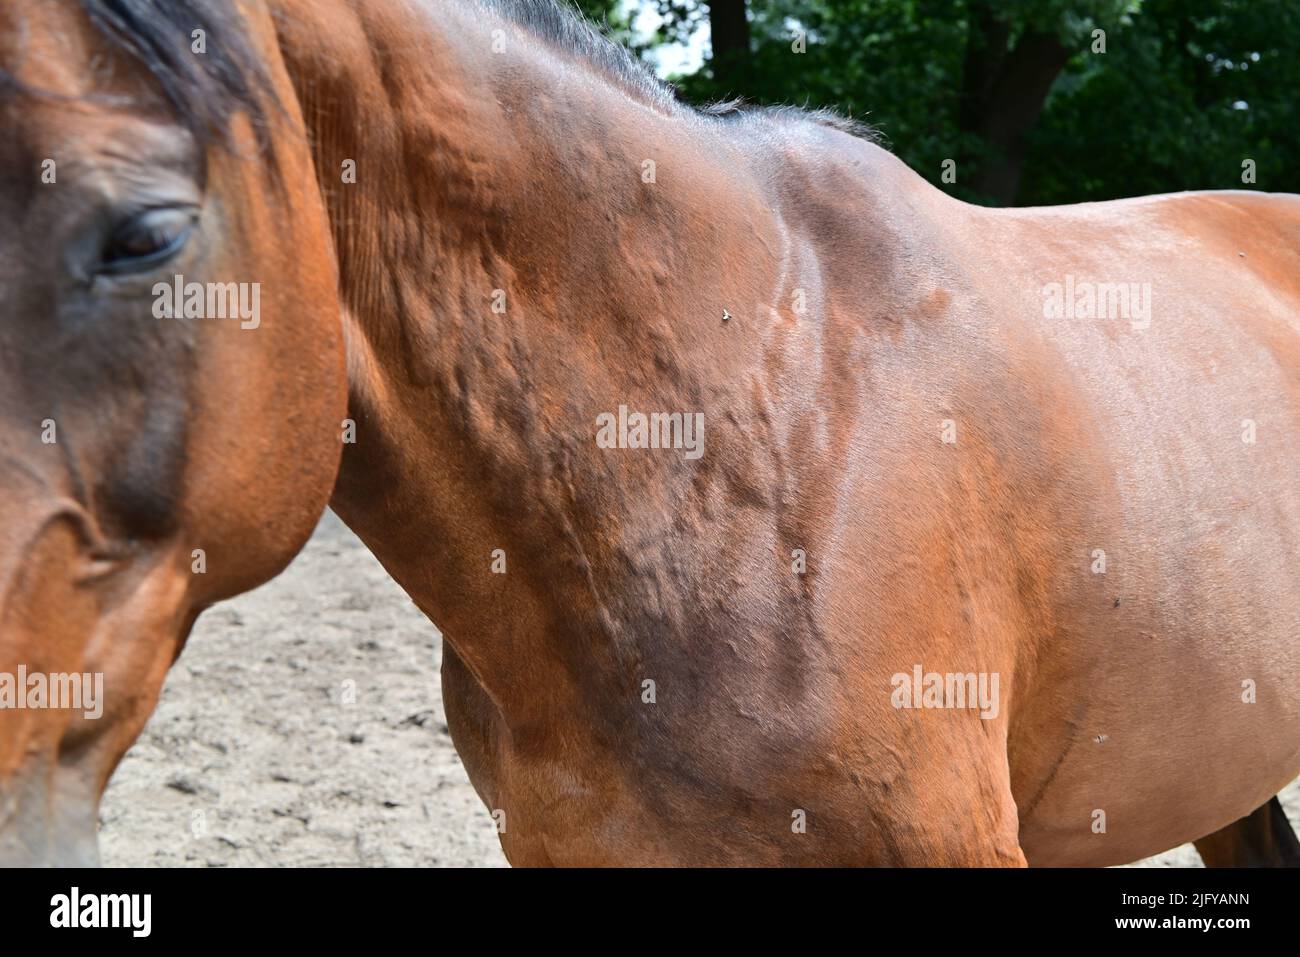 Urticaire ou roues allergiques sur le cou d'un cheval Banque D'Images